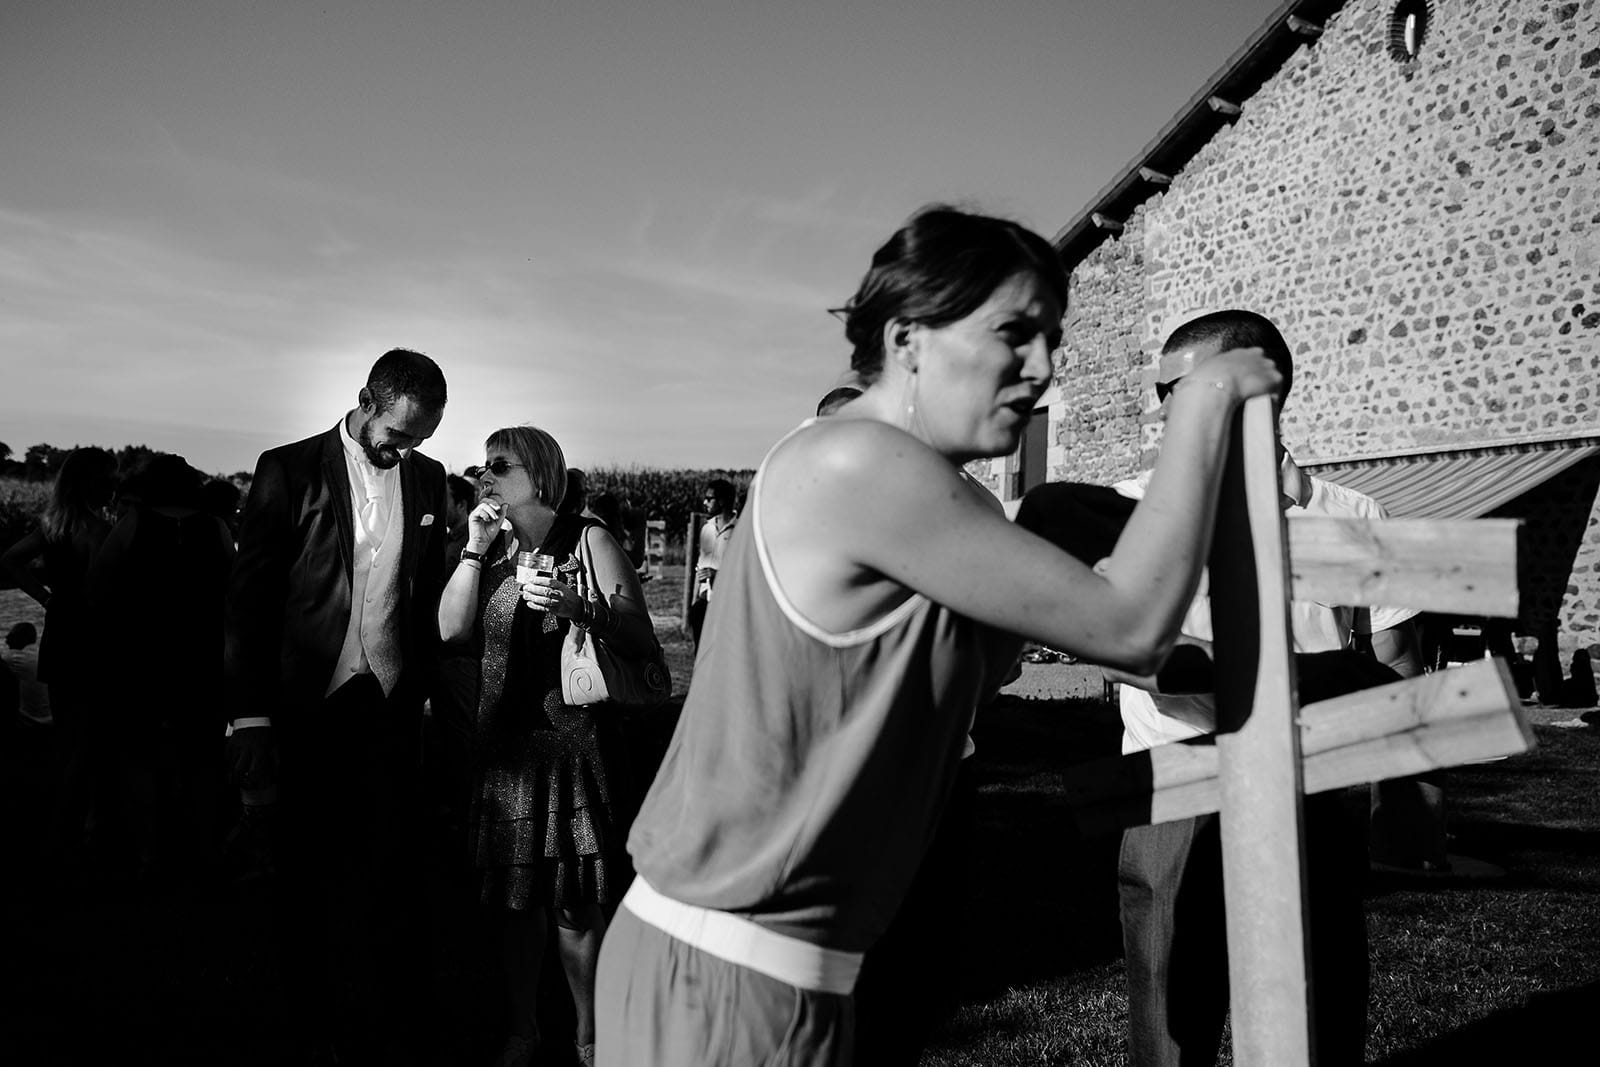 photographe de mariage Saint Etienne émotion joie bonheur noir et blanc